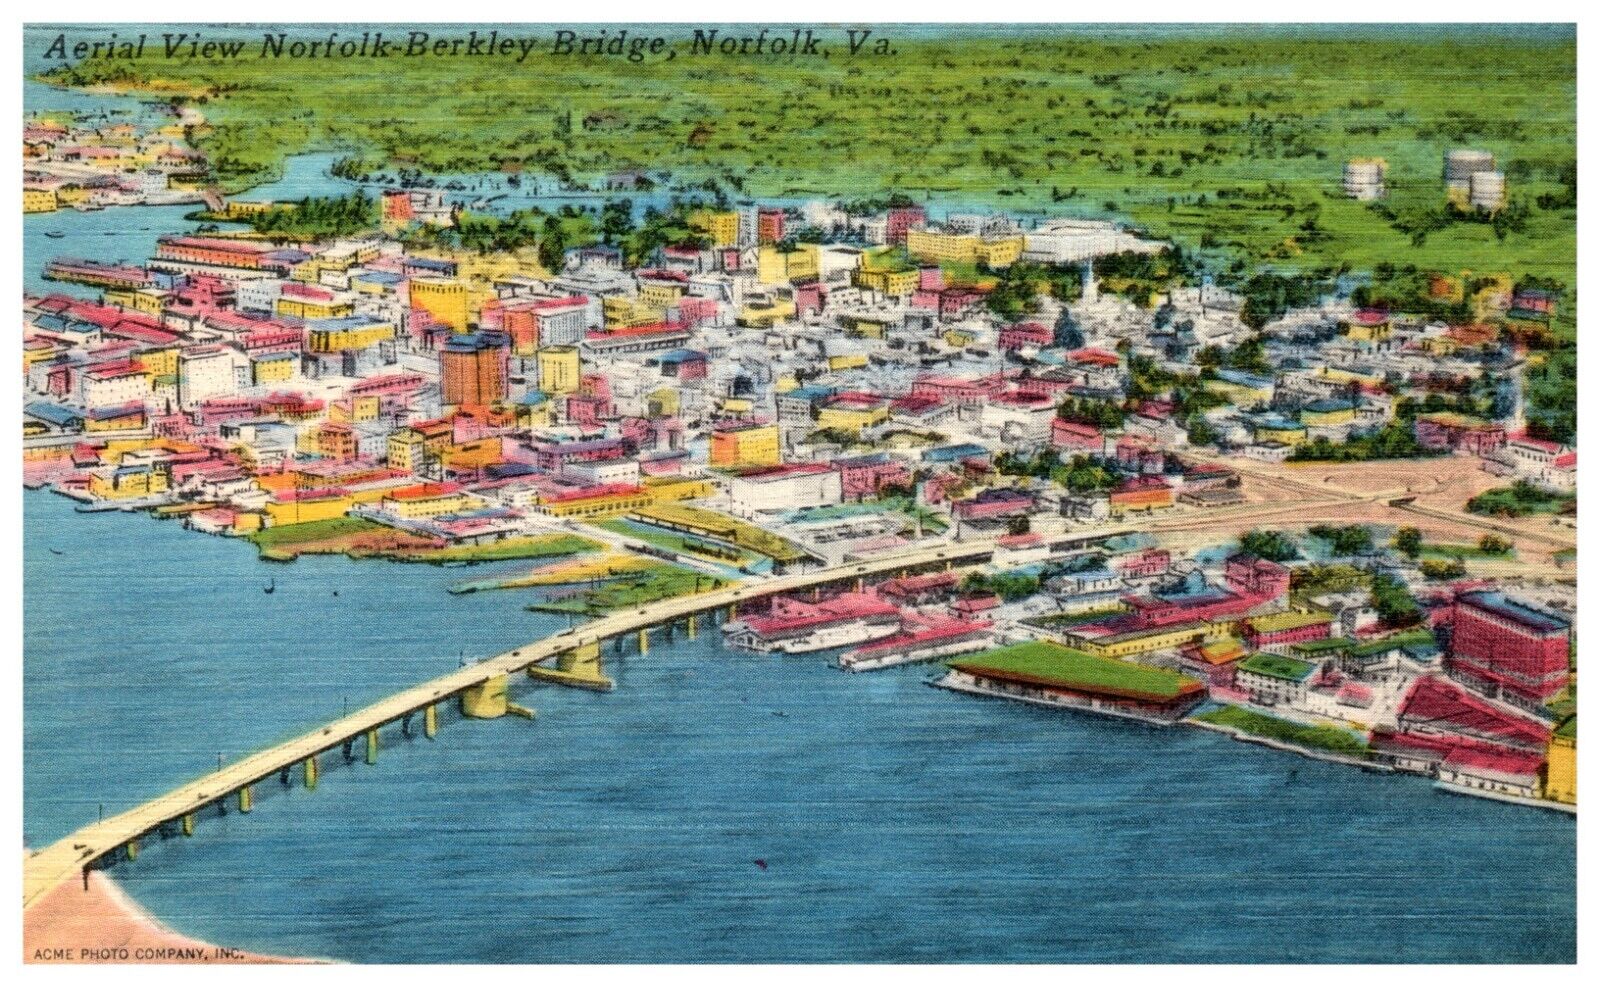 Postcard Old Aerial View of Norfolk Berkley Bridge Virginia 1930s/1940s?